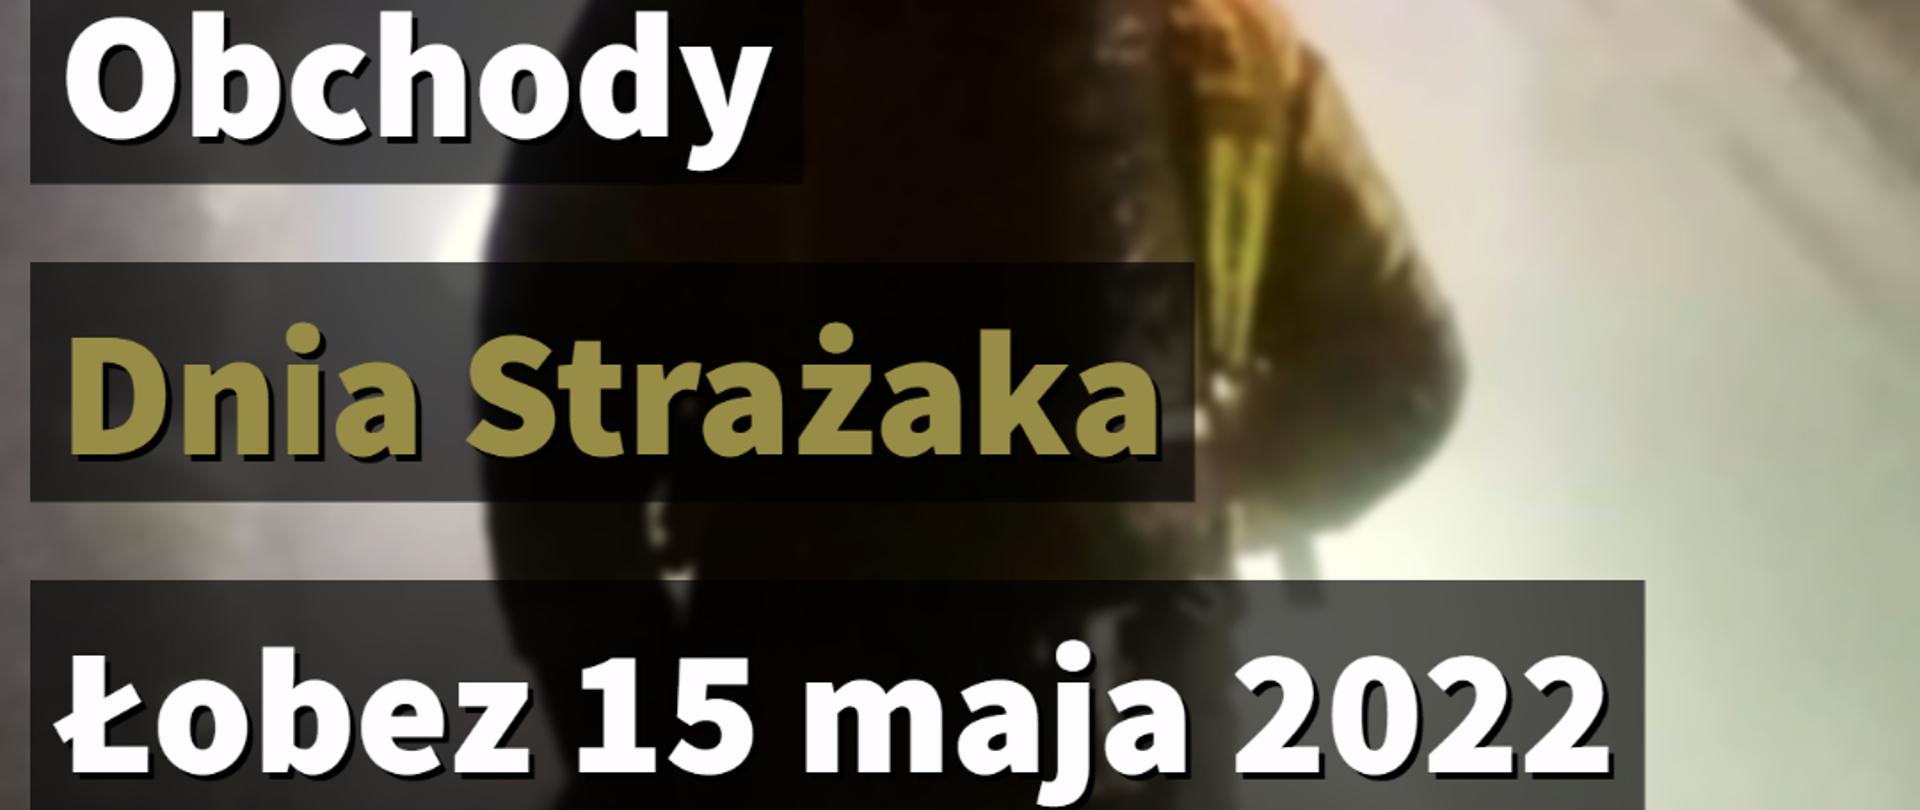 plakat Wojewódzkie Obchody Dnia Strażaka Łobez 2022